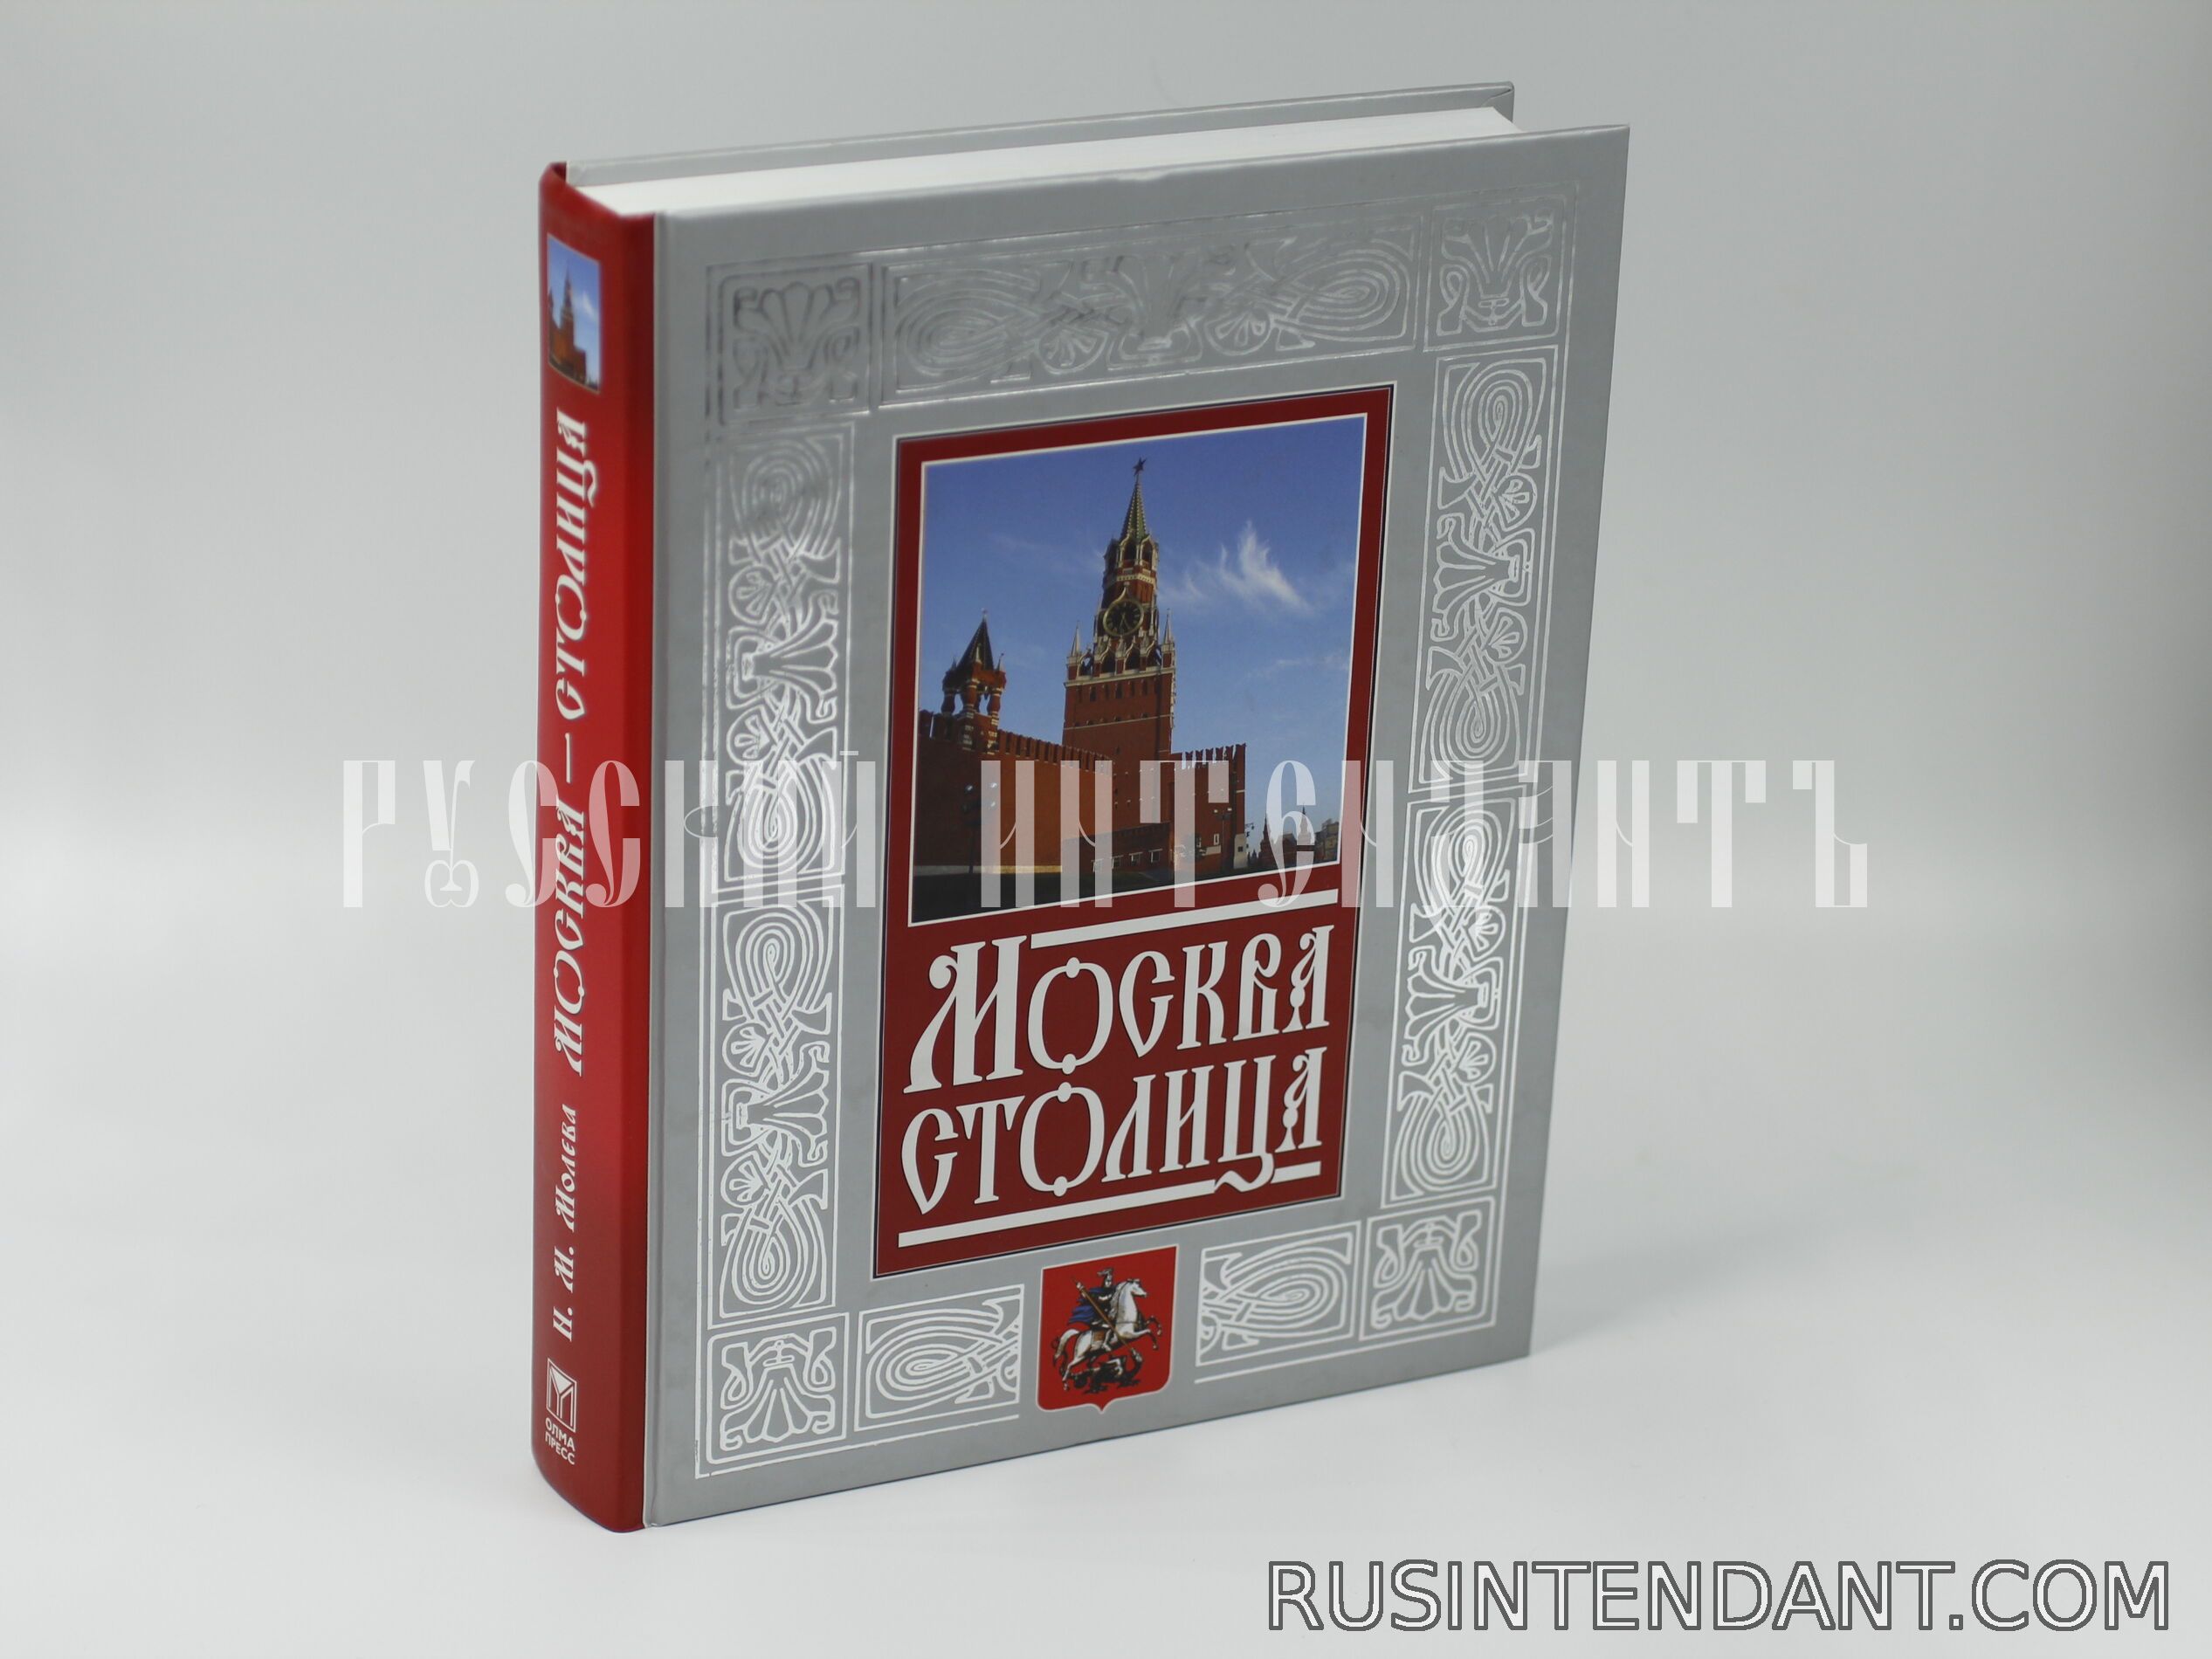 Фото 1: Книга "Москва - столица" 